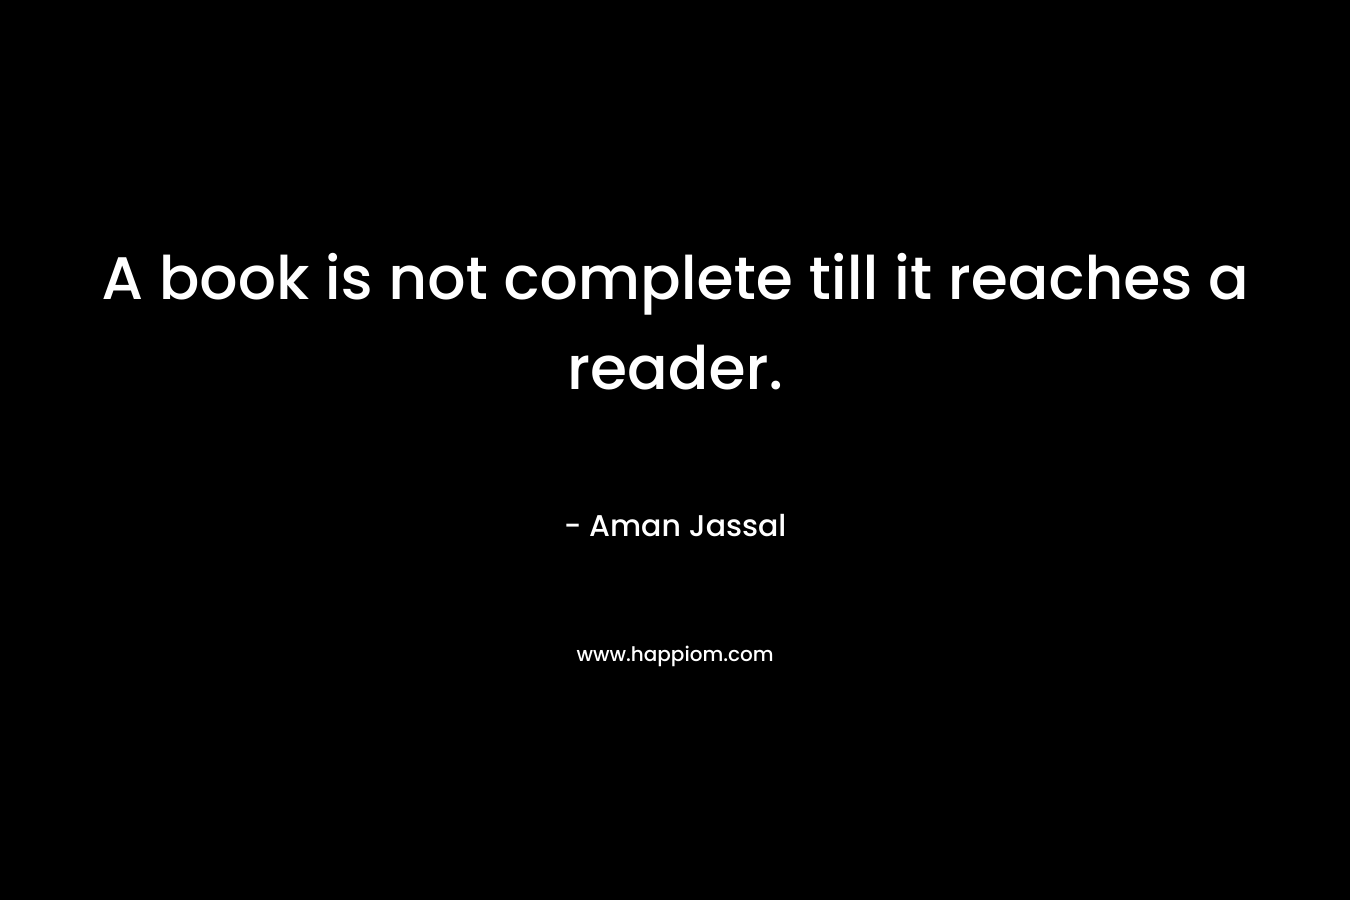 A book is not complete till it reaches a reader. – Aman Jassal